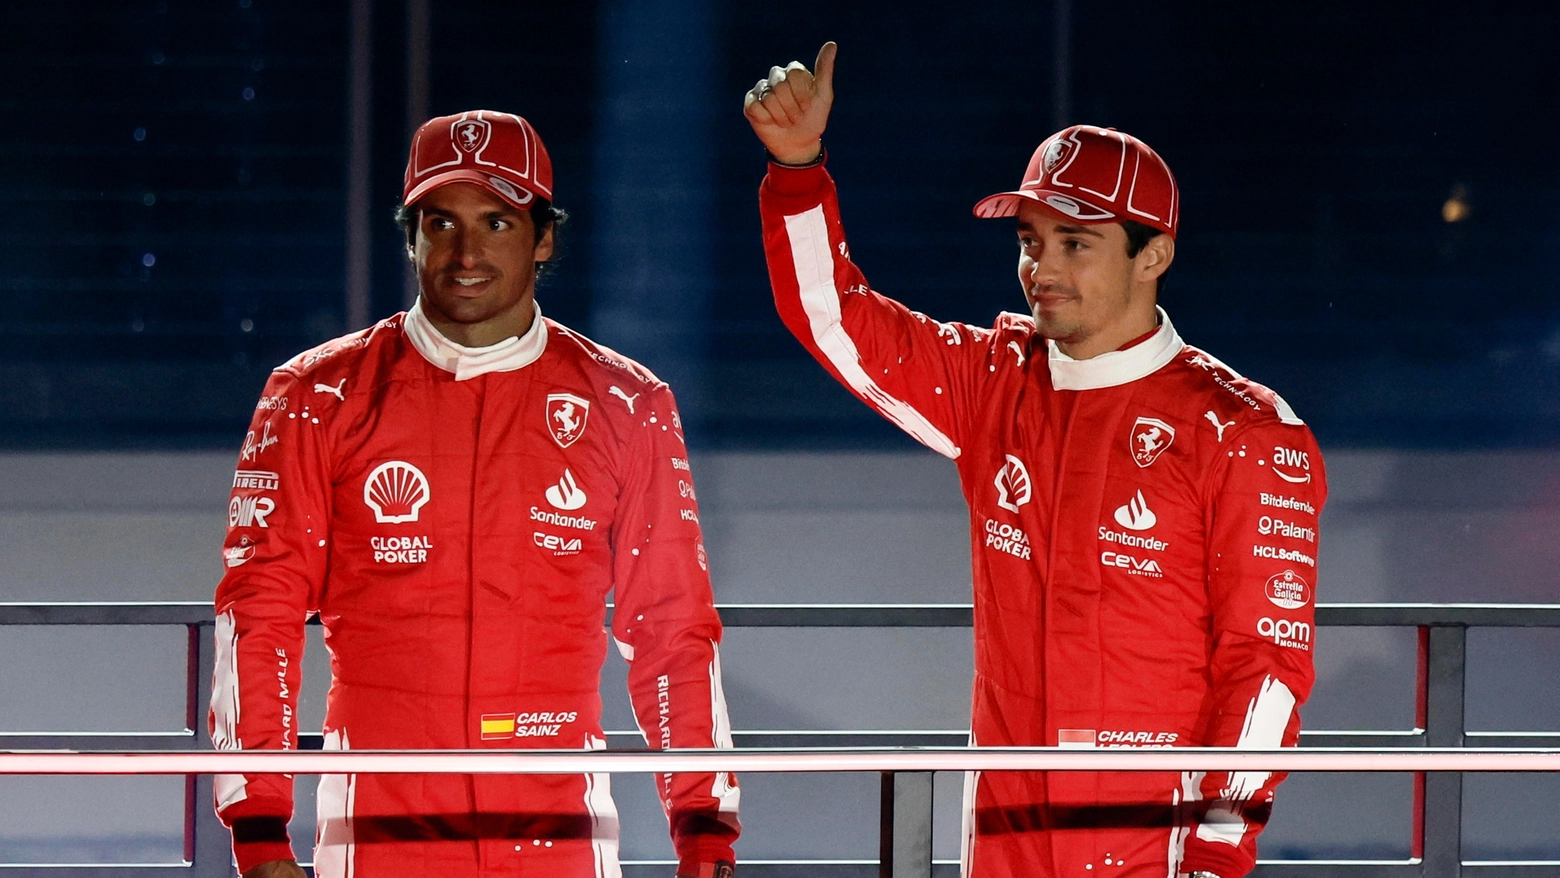 Carlos Sainz e Charles Leclerc resteranno in Ferrari